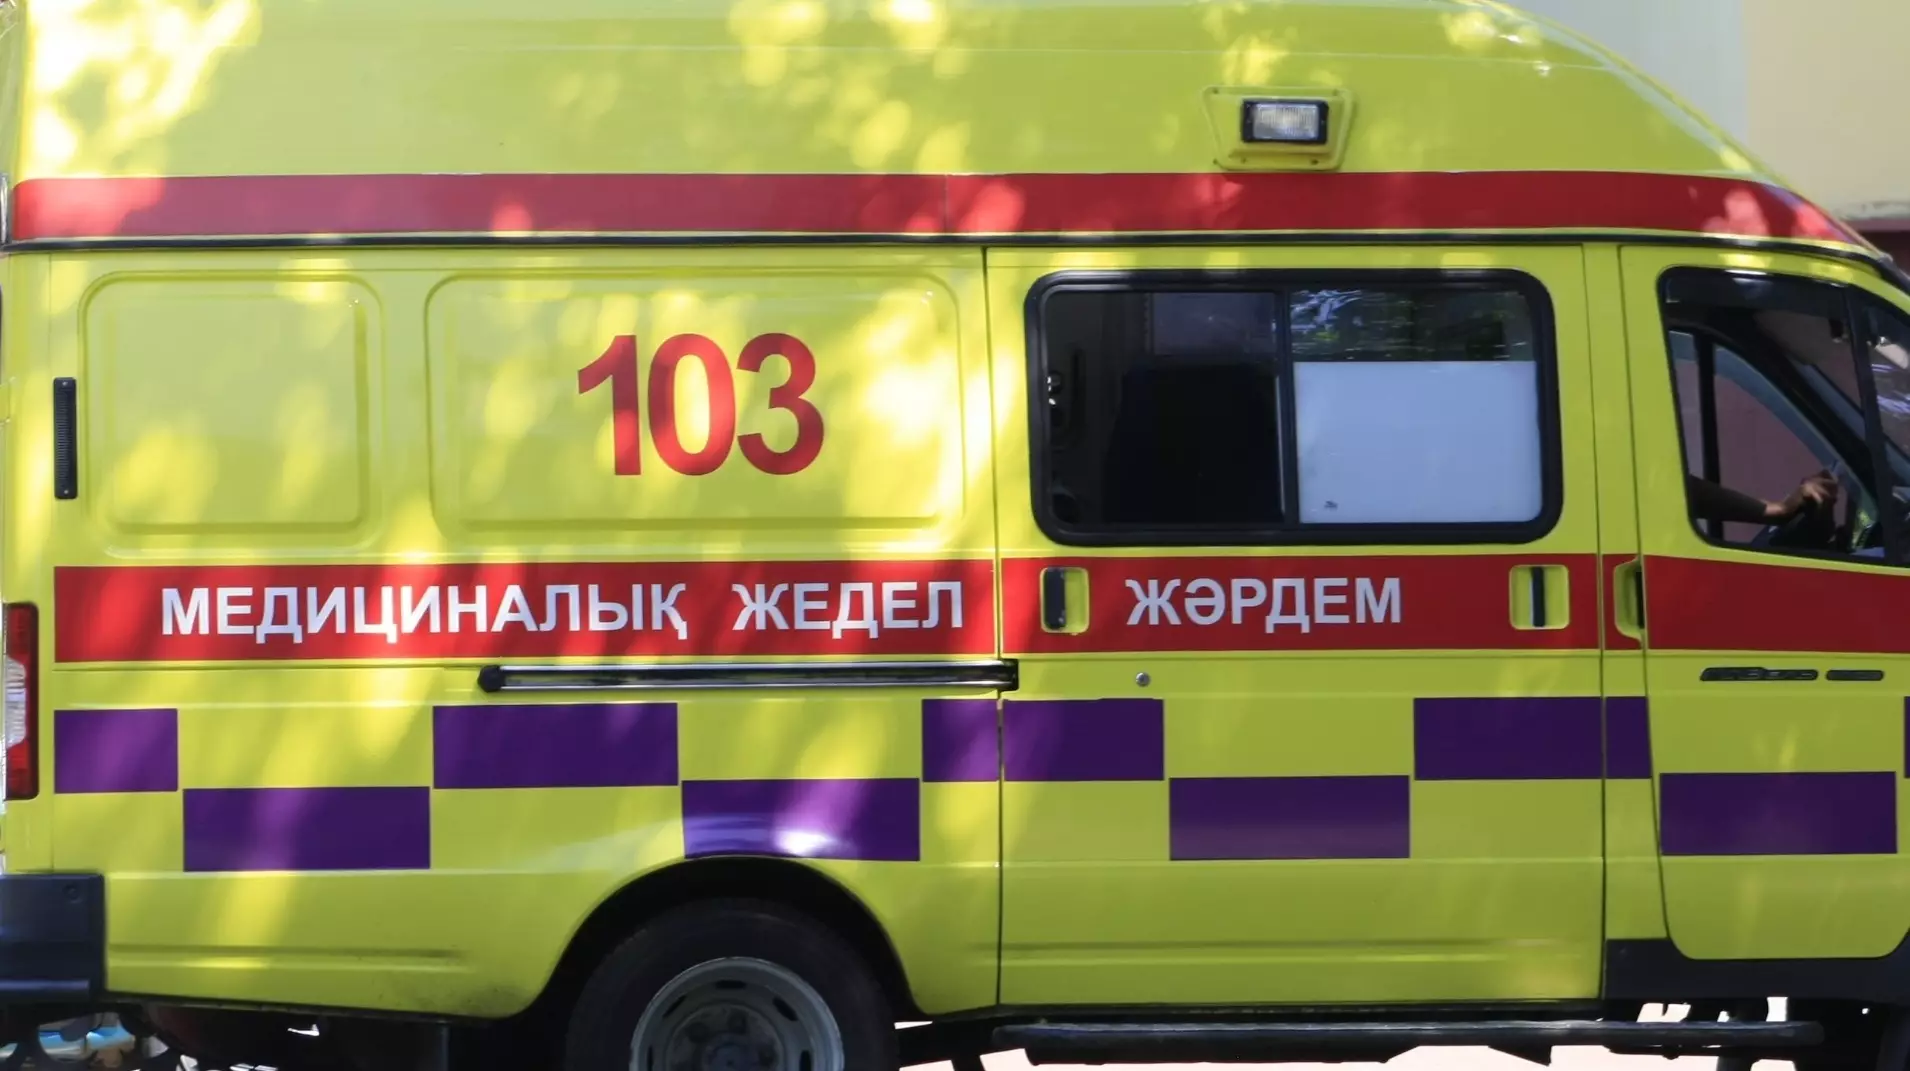 Школьника забили до смерти в уличном туалете в Жамбылской области, подозреваемый задержан